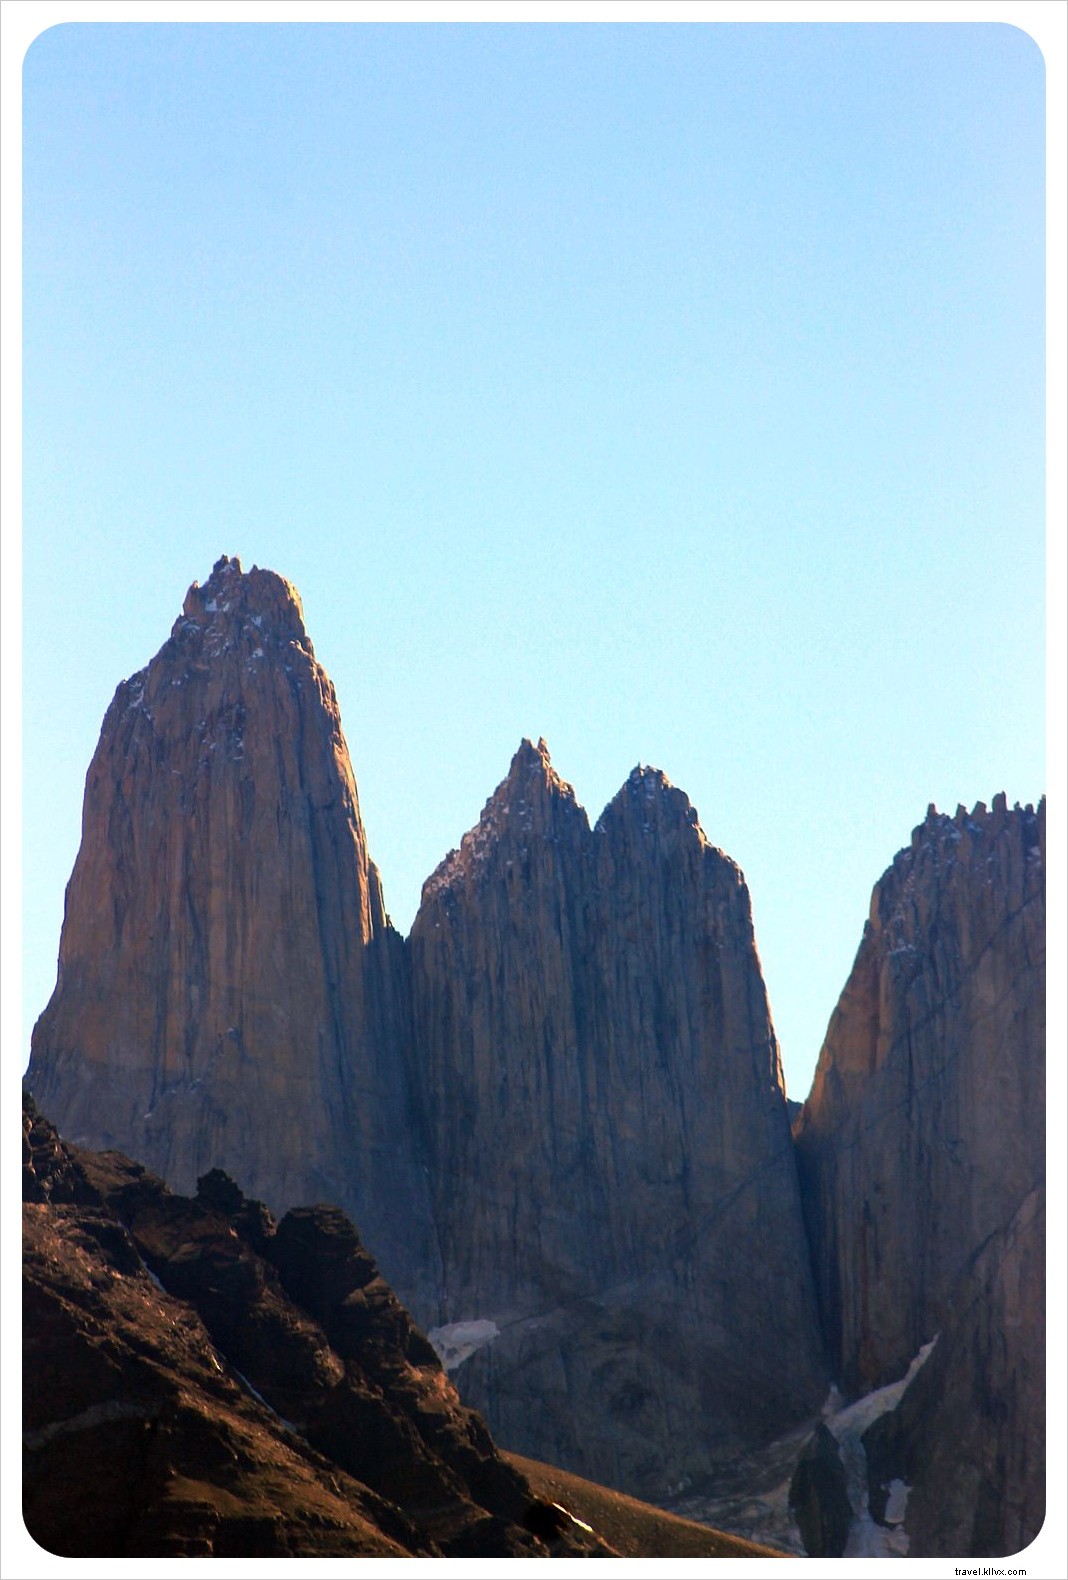 Torres del Paine:Recorre la esencia de la Patagonia en un día